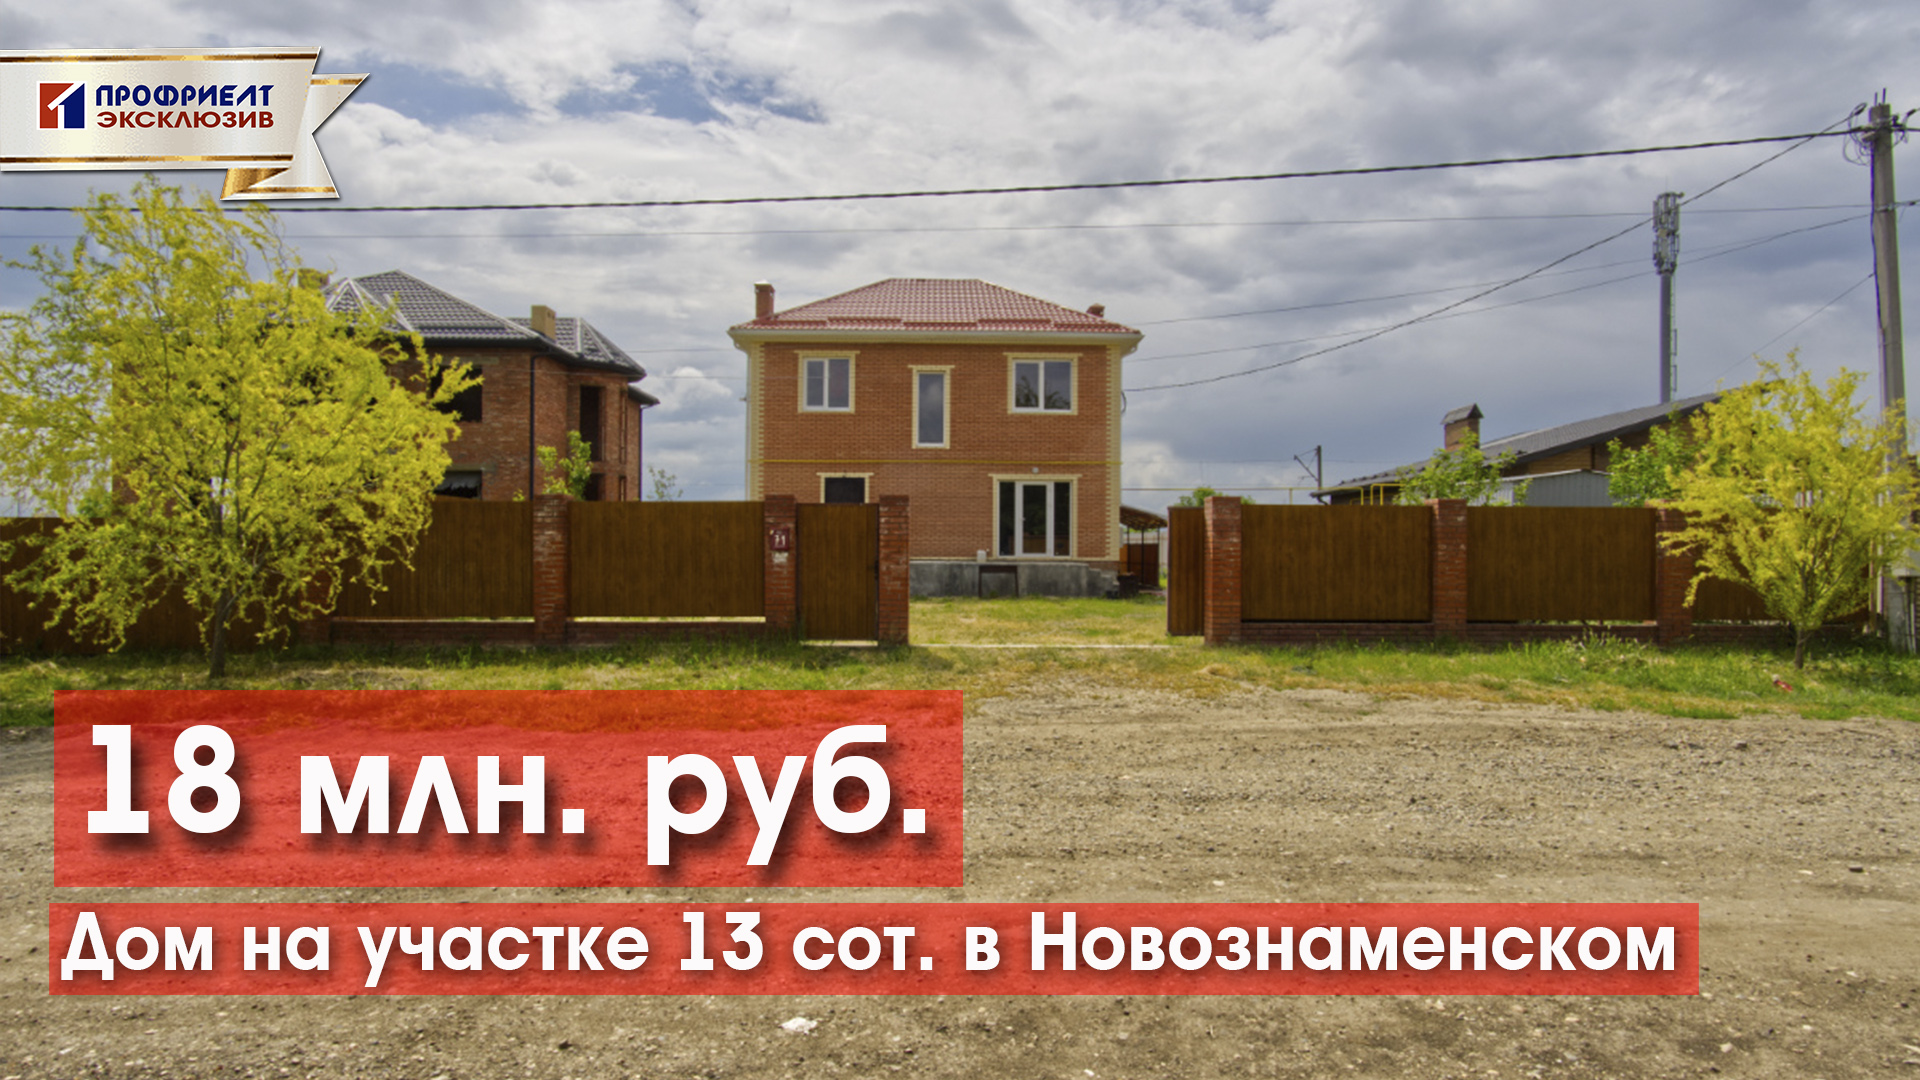 Дом на участке 13 сот. в Новознаменском